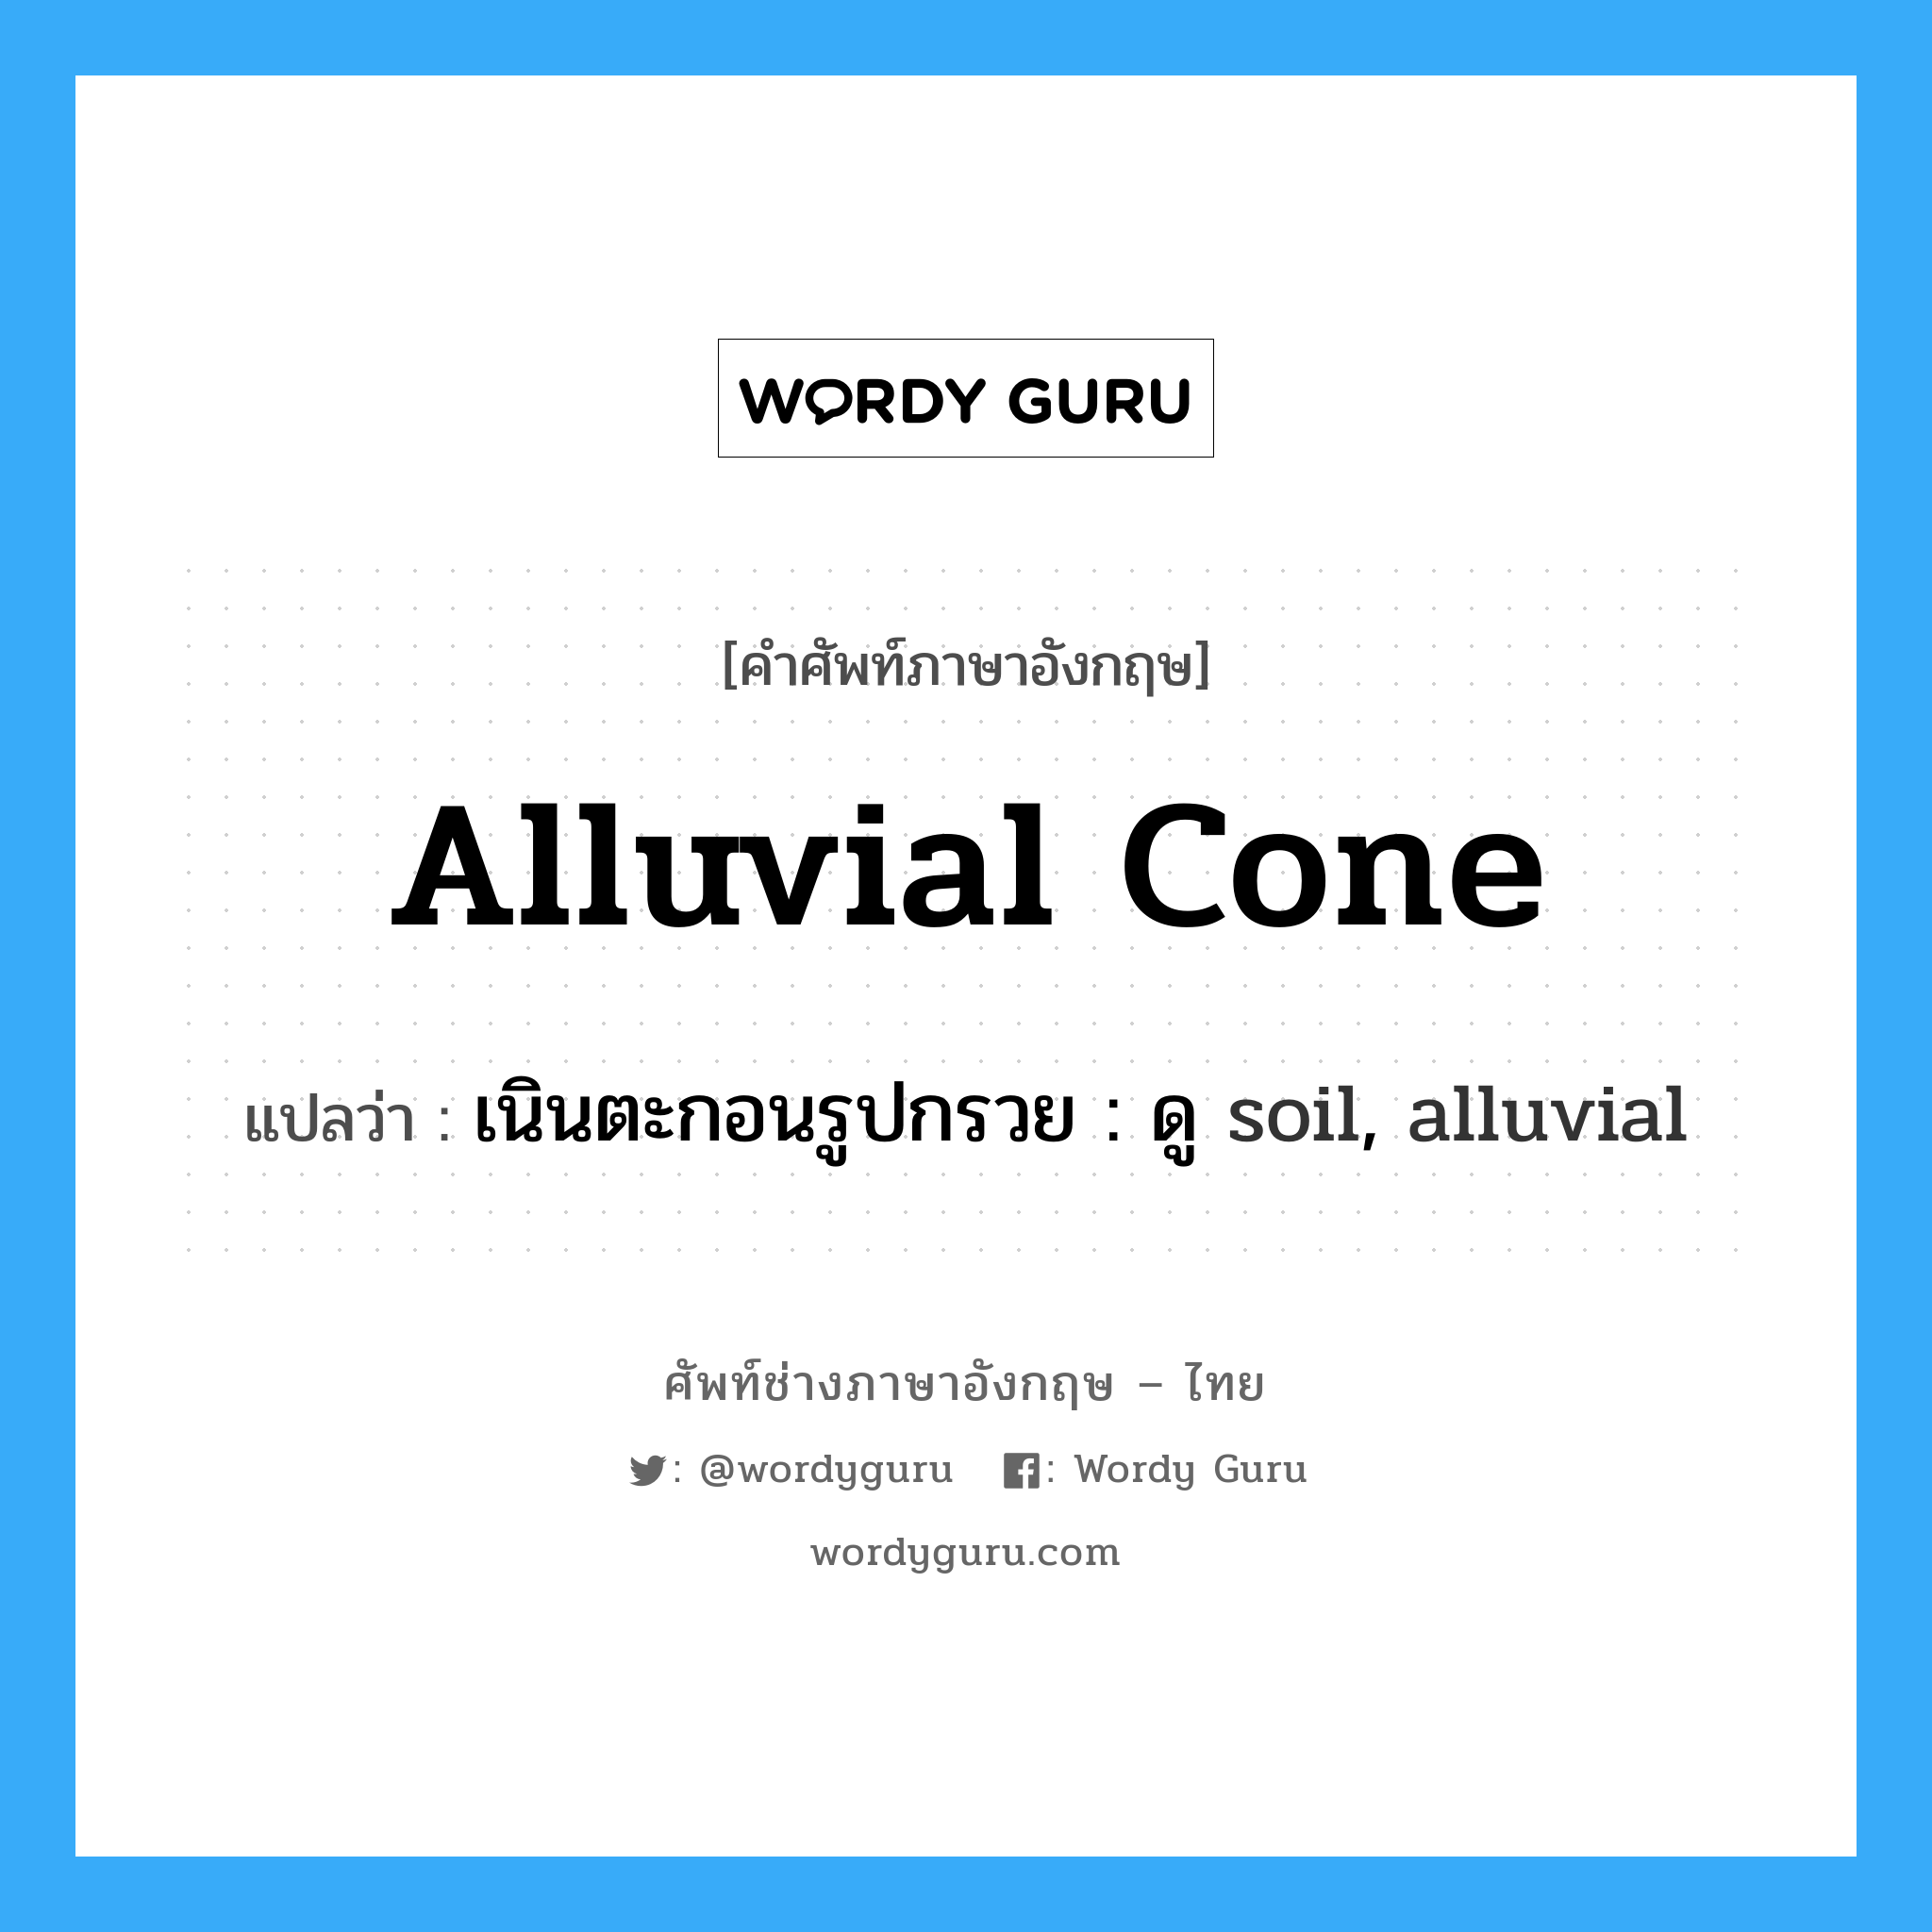 เนินตะกอนรูปกรวย : ดู soil, alluvial ภาษาอังกฤษ?, คำศัพท์ช่างภาษาอังกฤษ - ไทย เนินตะกอนรูปกรวย : ดู soil, alluvial คำศัพท์ภาษาอังกฤษ เนินตะกอนรูปกรวย : ดู soil, alluvial แปลว่า alluvial cone